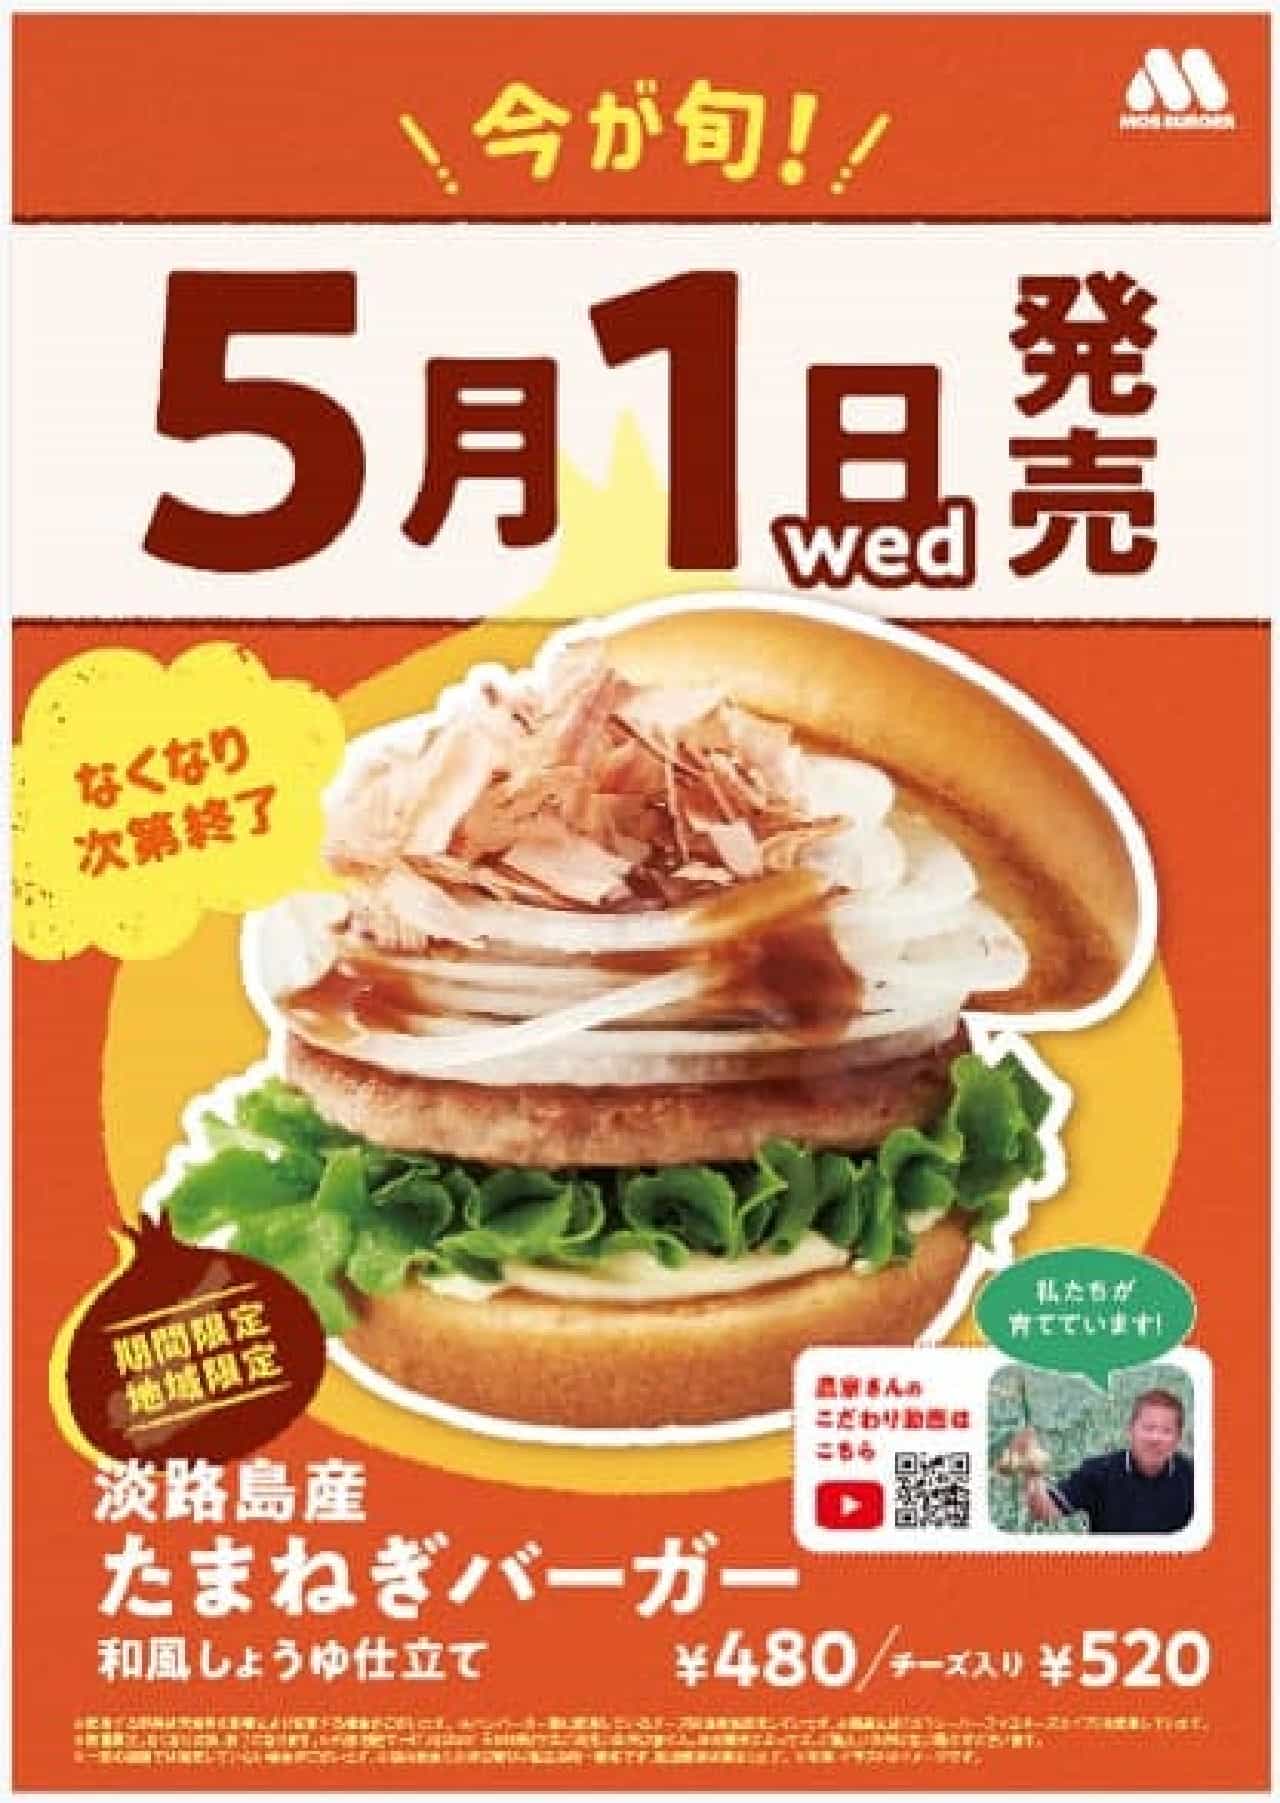 モスバーガーが淡路島産たまねぎを使用した限定バーガーを5月1日より関西・四国地域で販売開始、『淡路島産たまねぎ祭り』開催を4年ぶりに実施 画像1